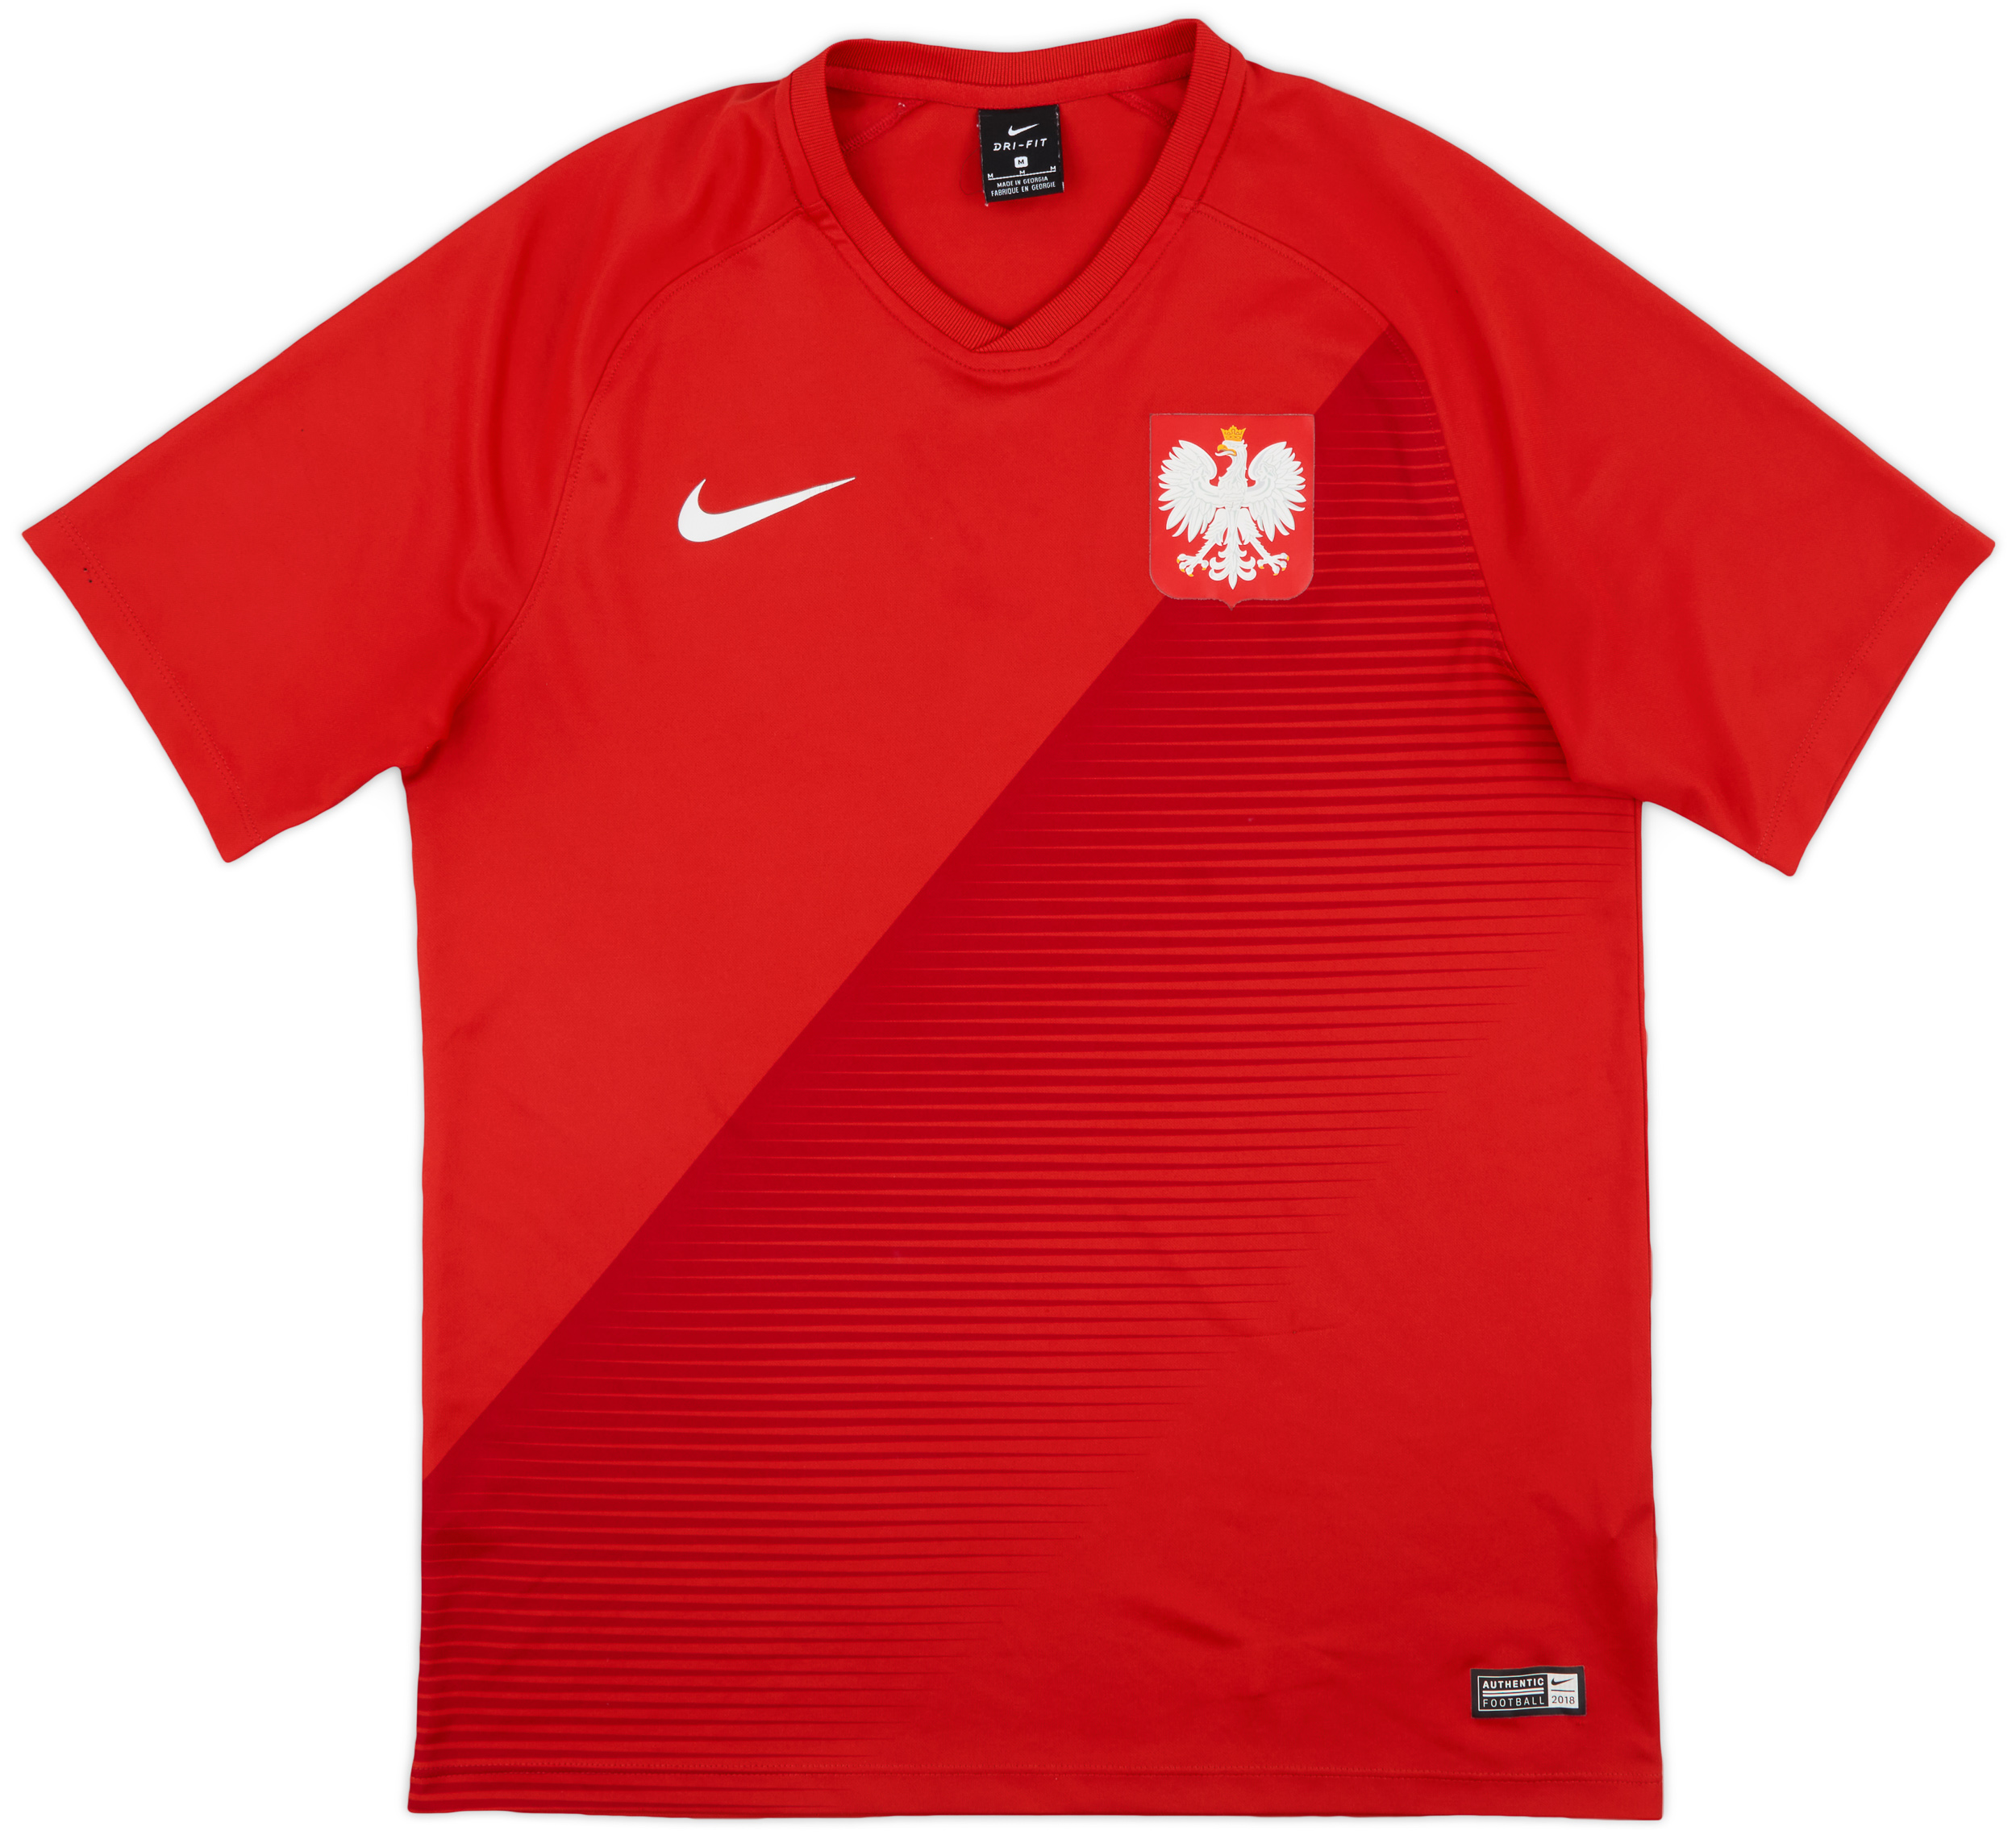 Retro Poland Shirt